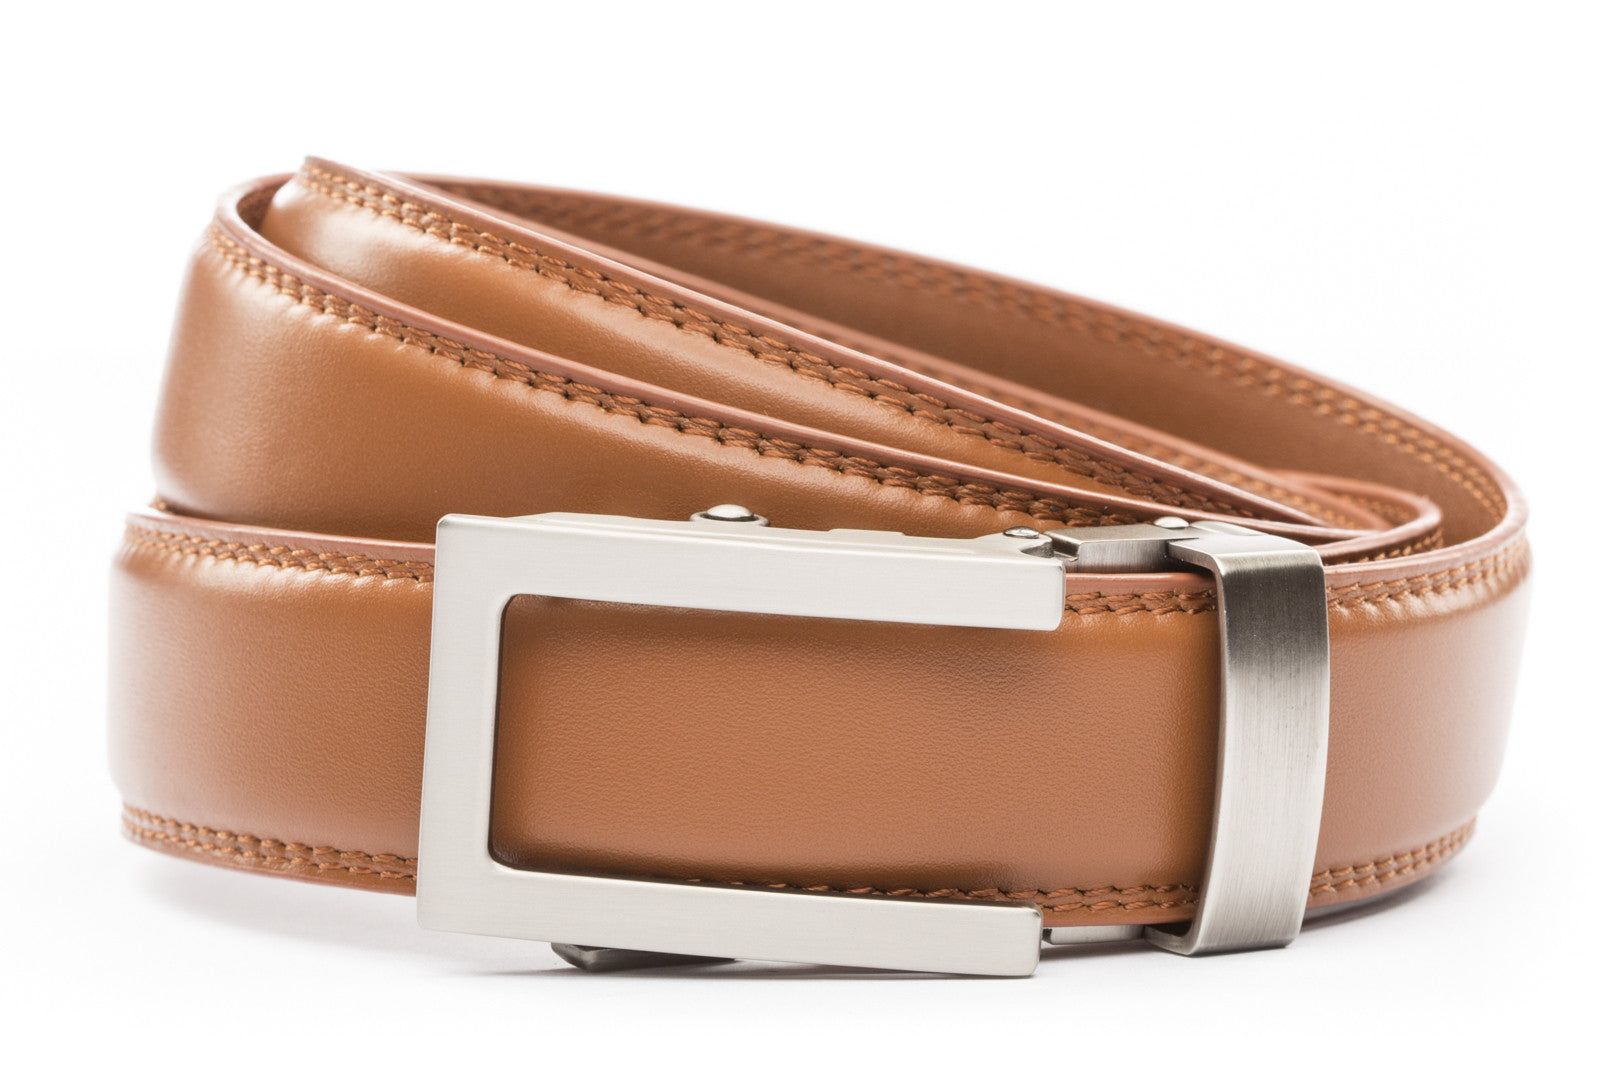 Men's Tan Leather Belt | Ratchet Belt Without Holes | Anson Belt ...